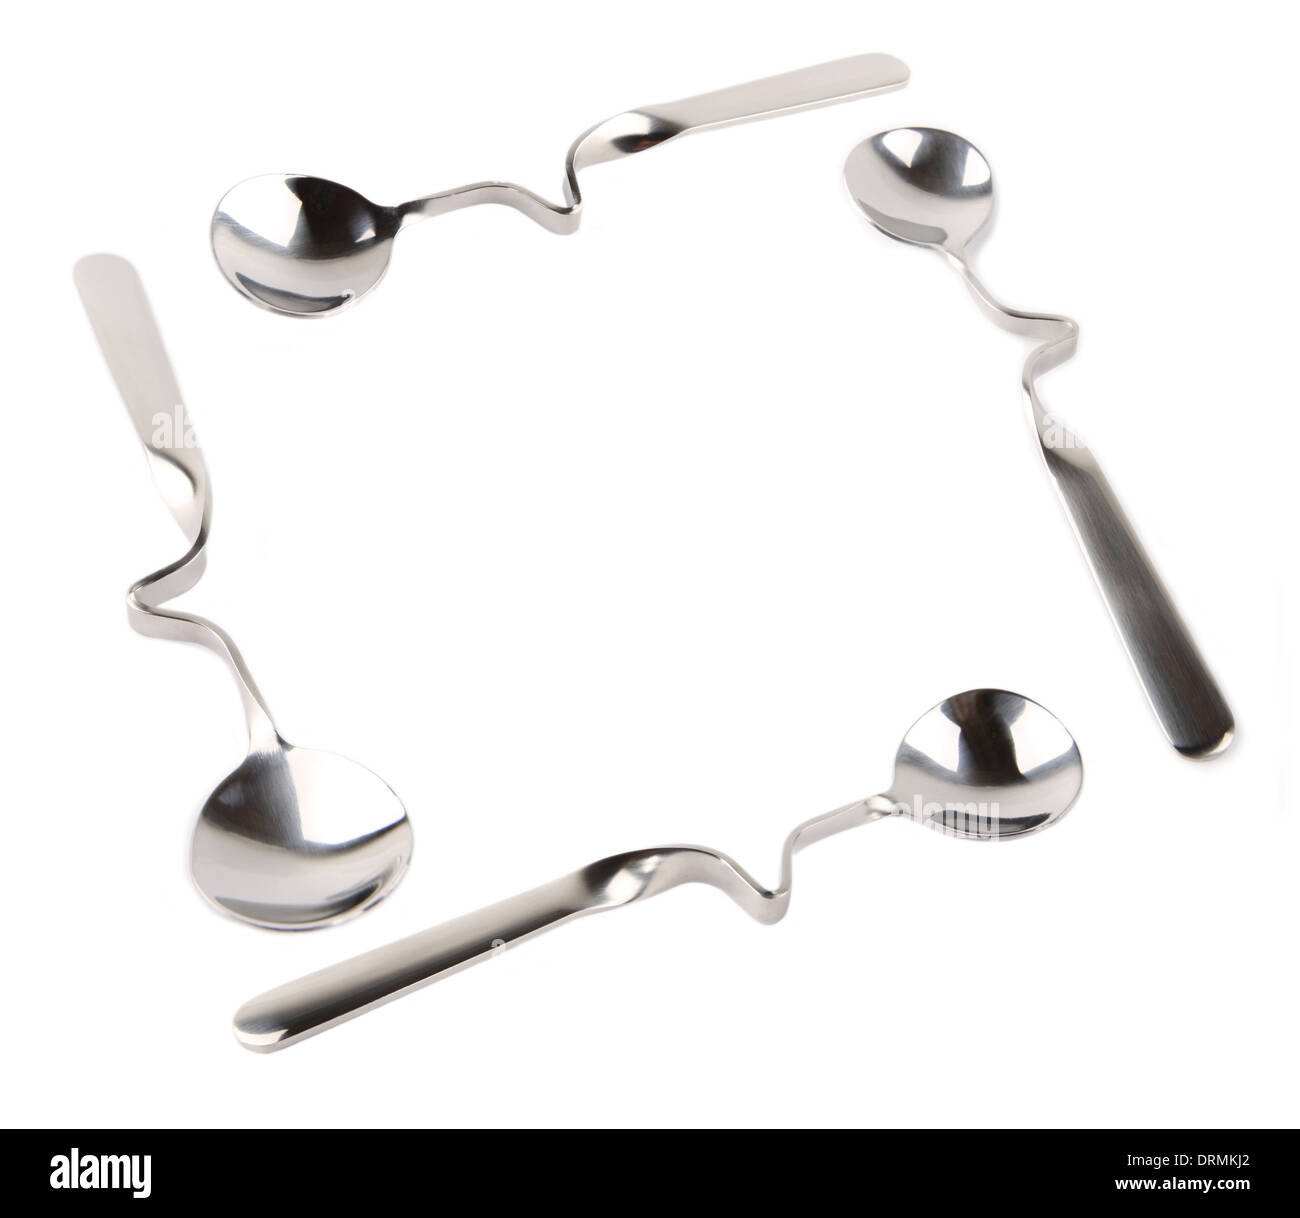 crank spoon Stock Photo